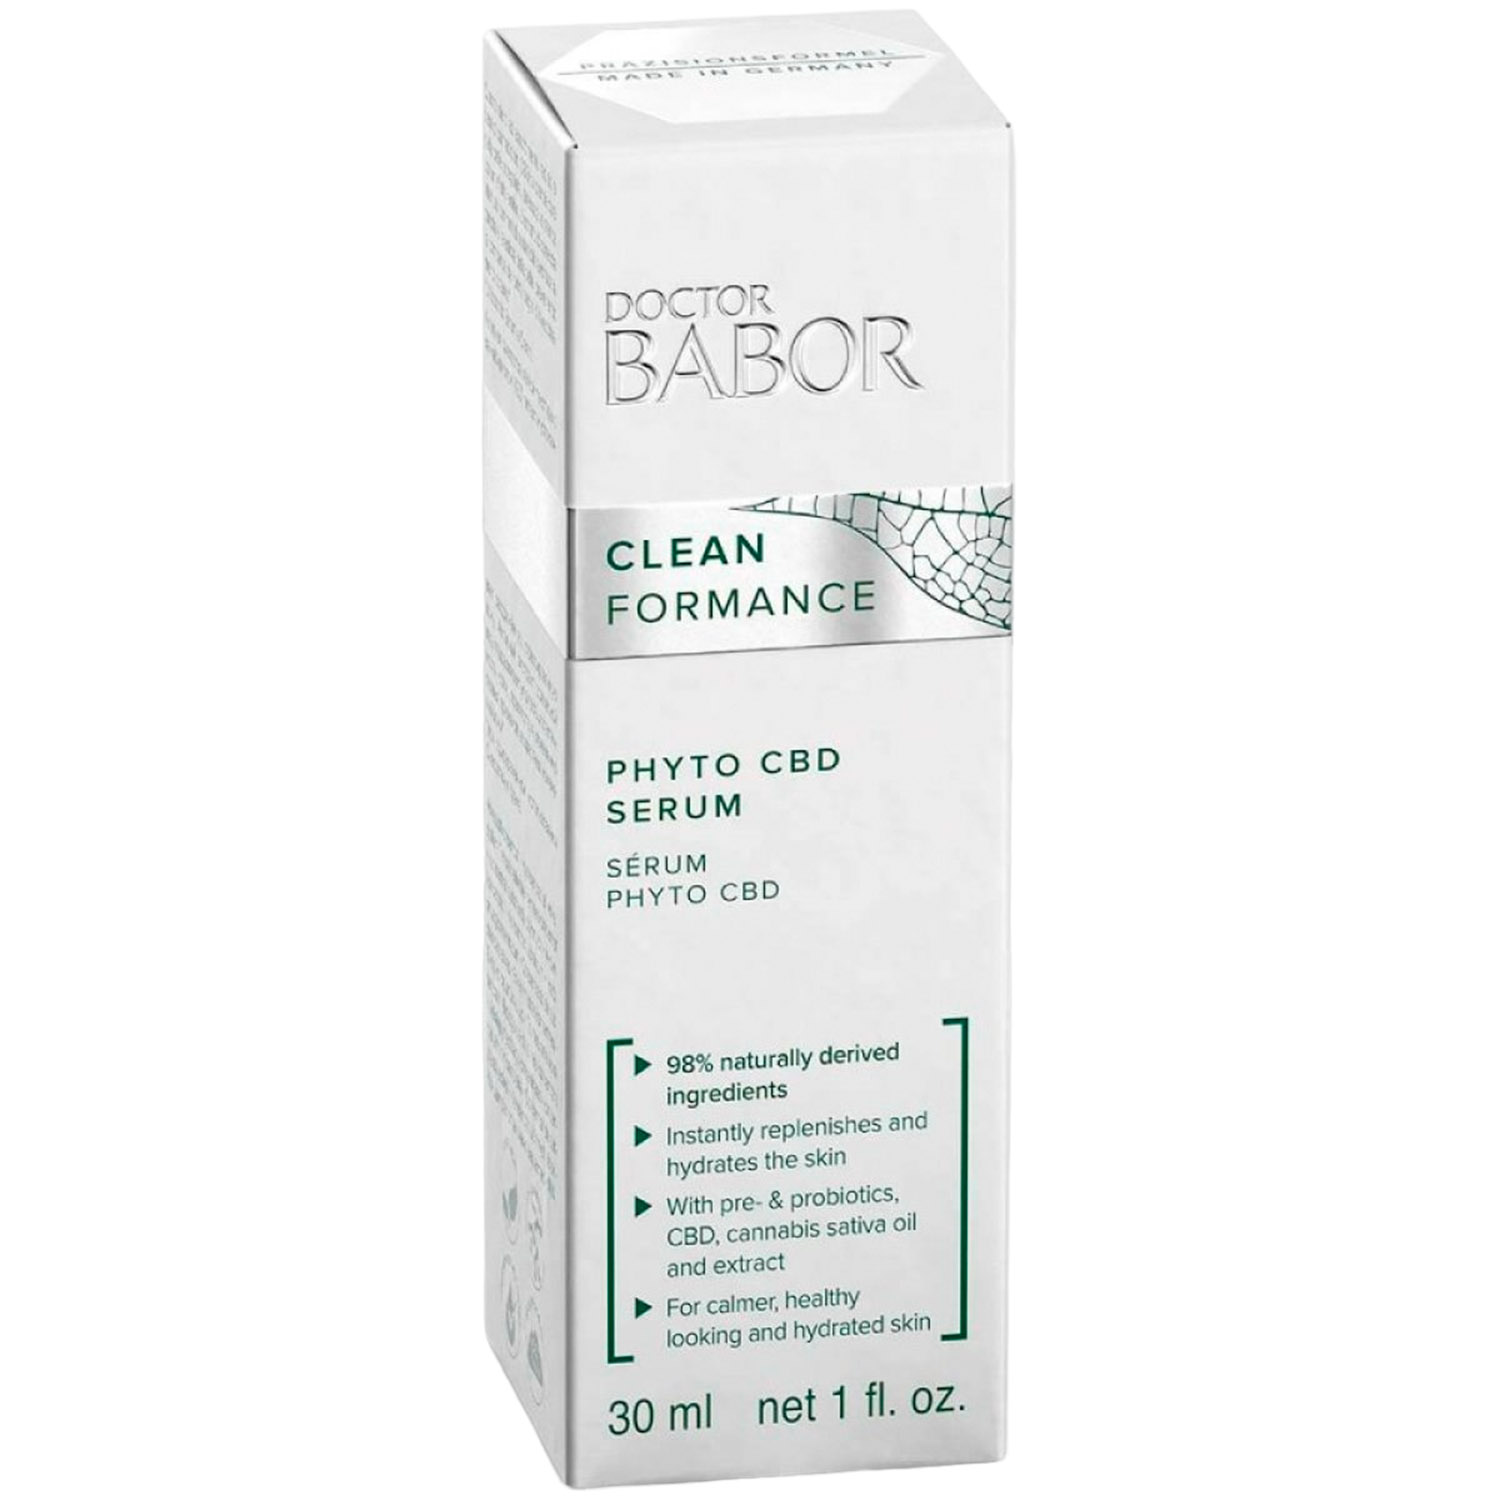 Успокаивающая релакс-сыворотка Babor Doctor Babor Clean Formance Phyto CBD Serum, 50 мл - фото 2